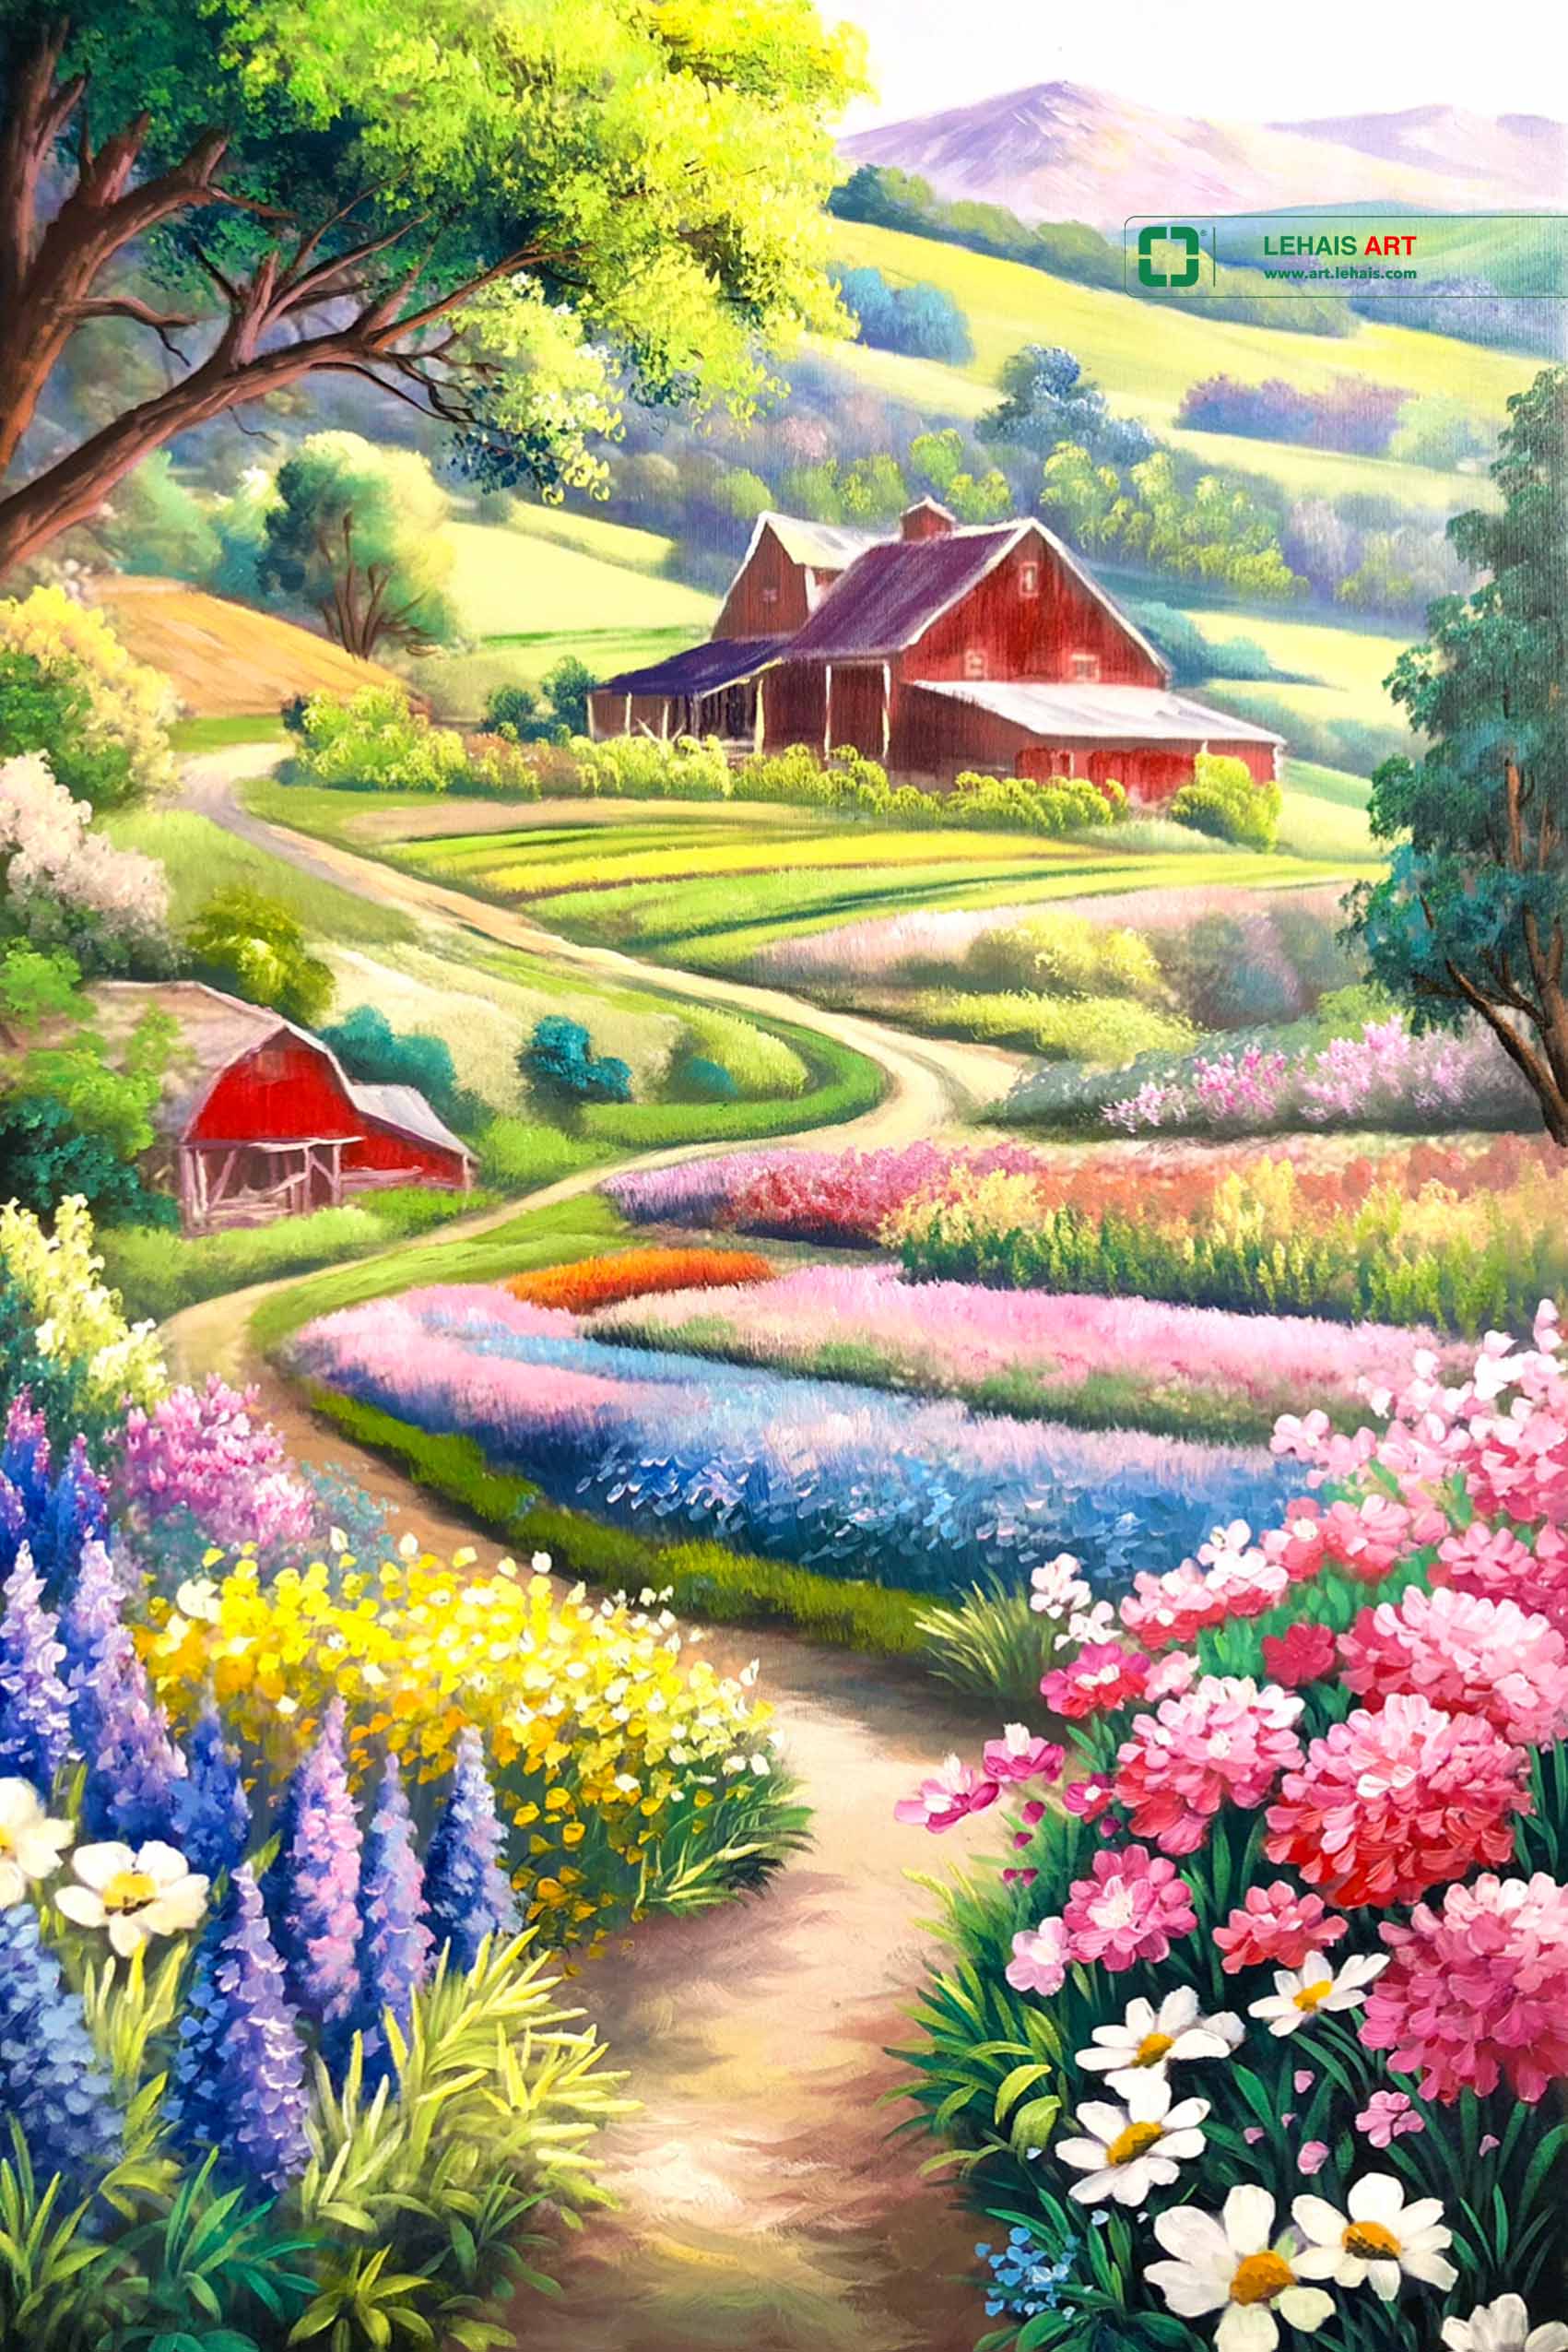 Tranh sơn dầu phong cảnh vẽ cánh đồng hoa - TSD655LHAR